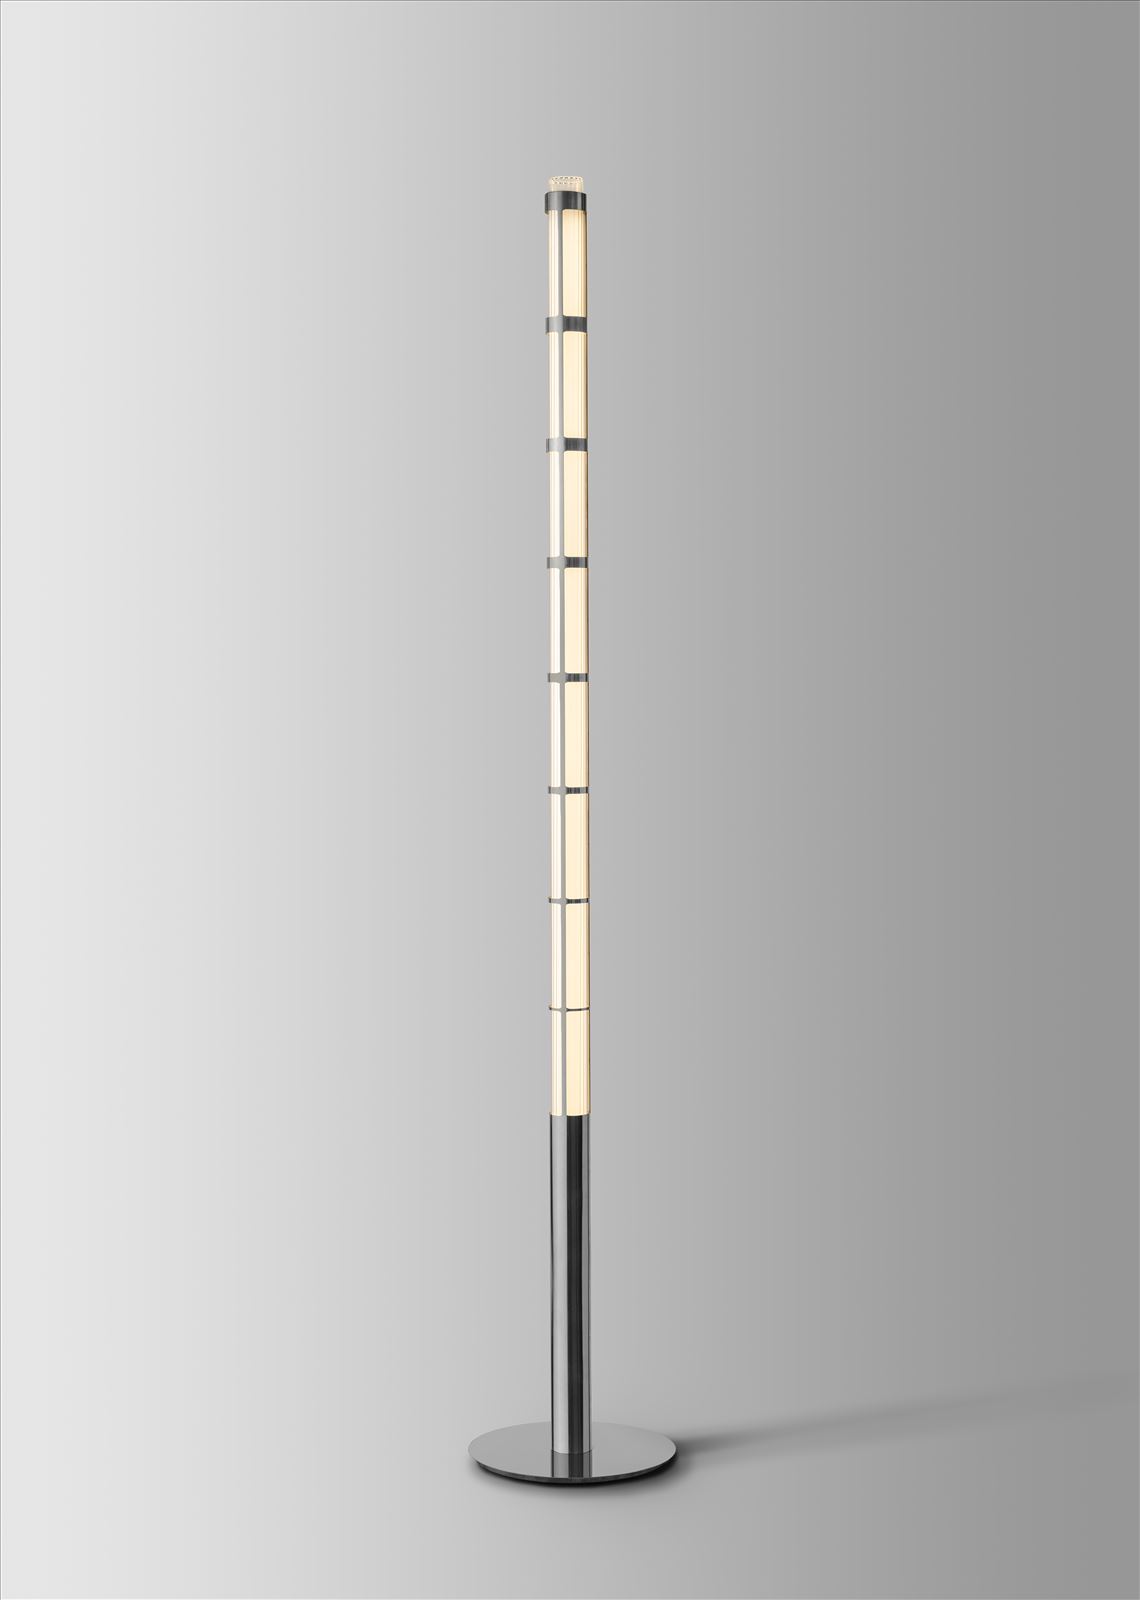 גופי תאורה בקטגוריית: מנורות עמידה  ,שם המוצר: LINEOR